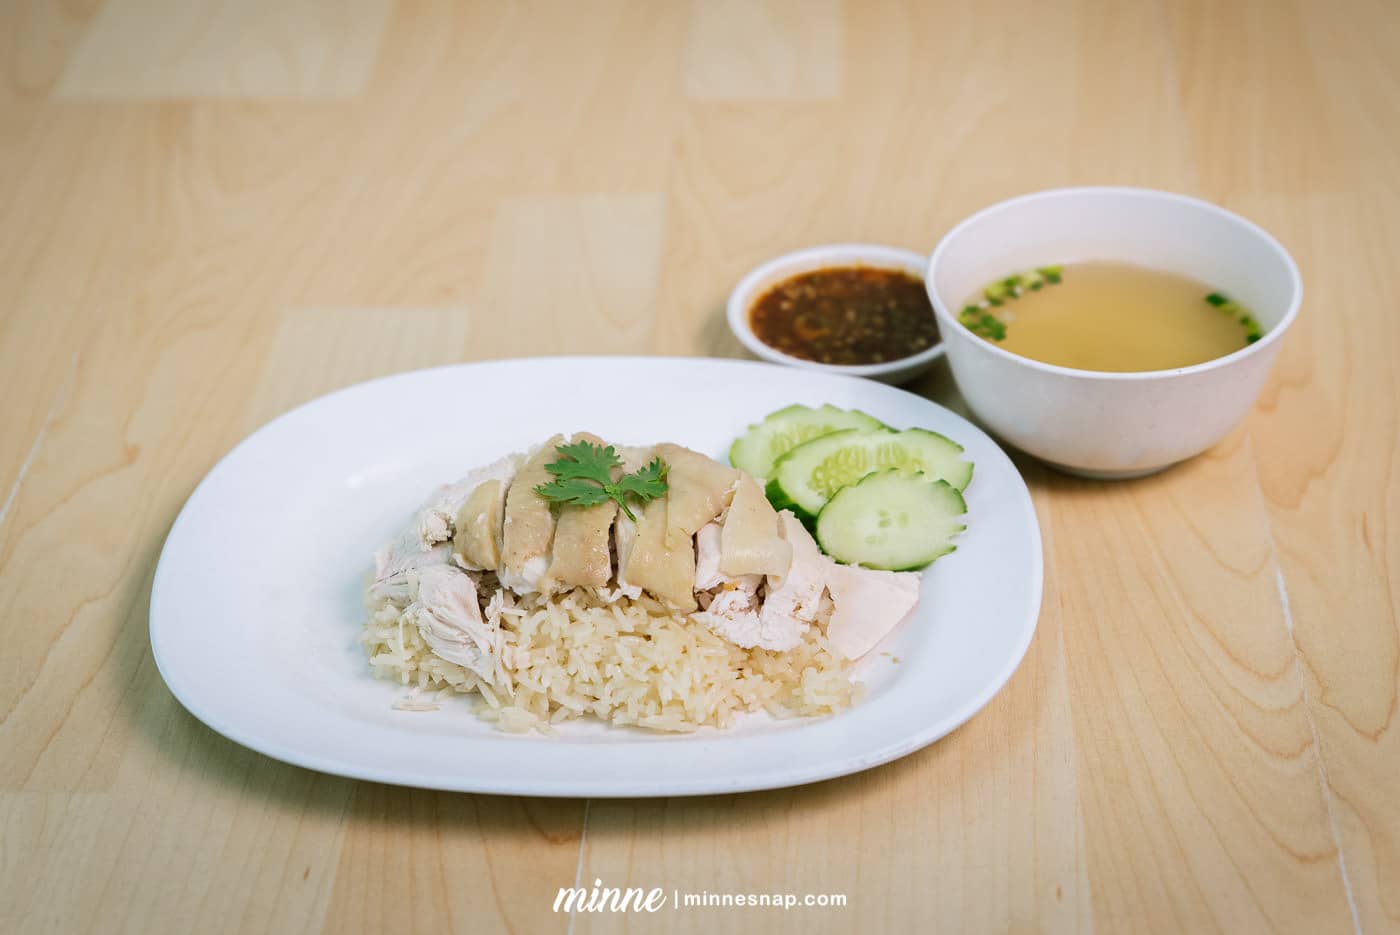 ข้าวมันไก่ไหหลำบางศรีเมือง - Hainanese chicken rice